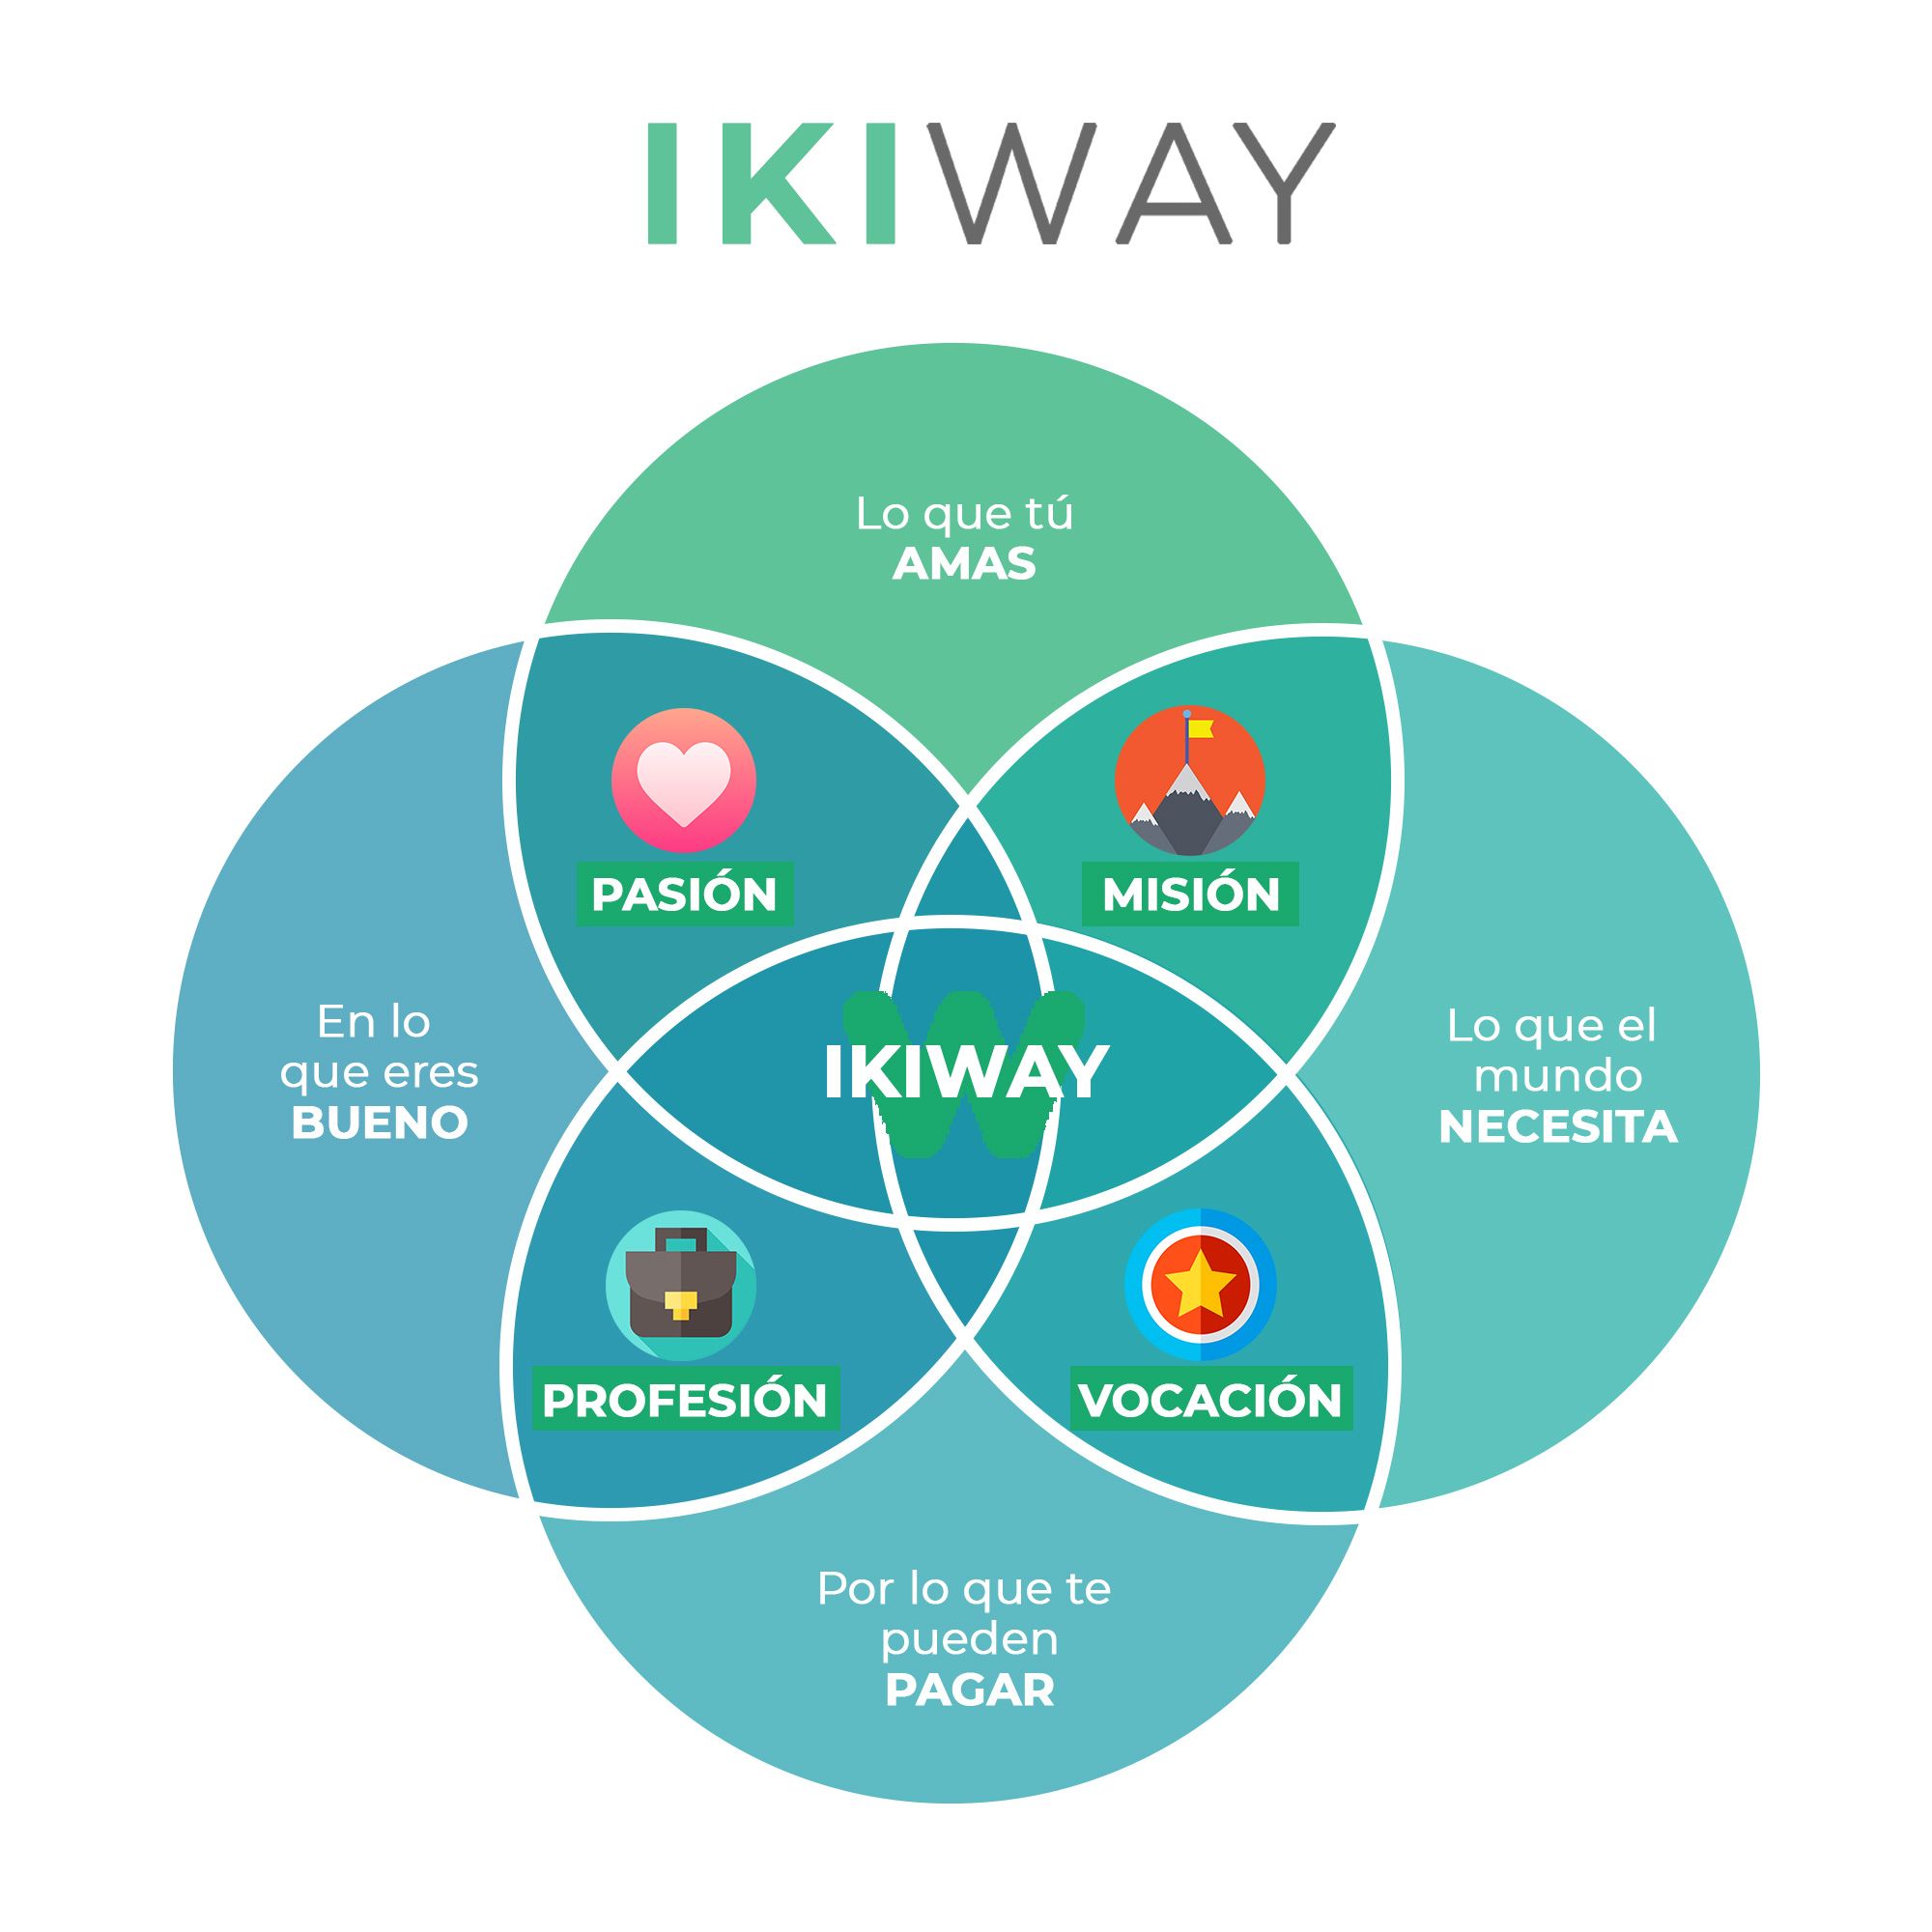 Educoway implementa la metodología Ikiway en la orientación vocacional.